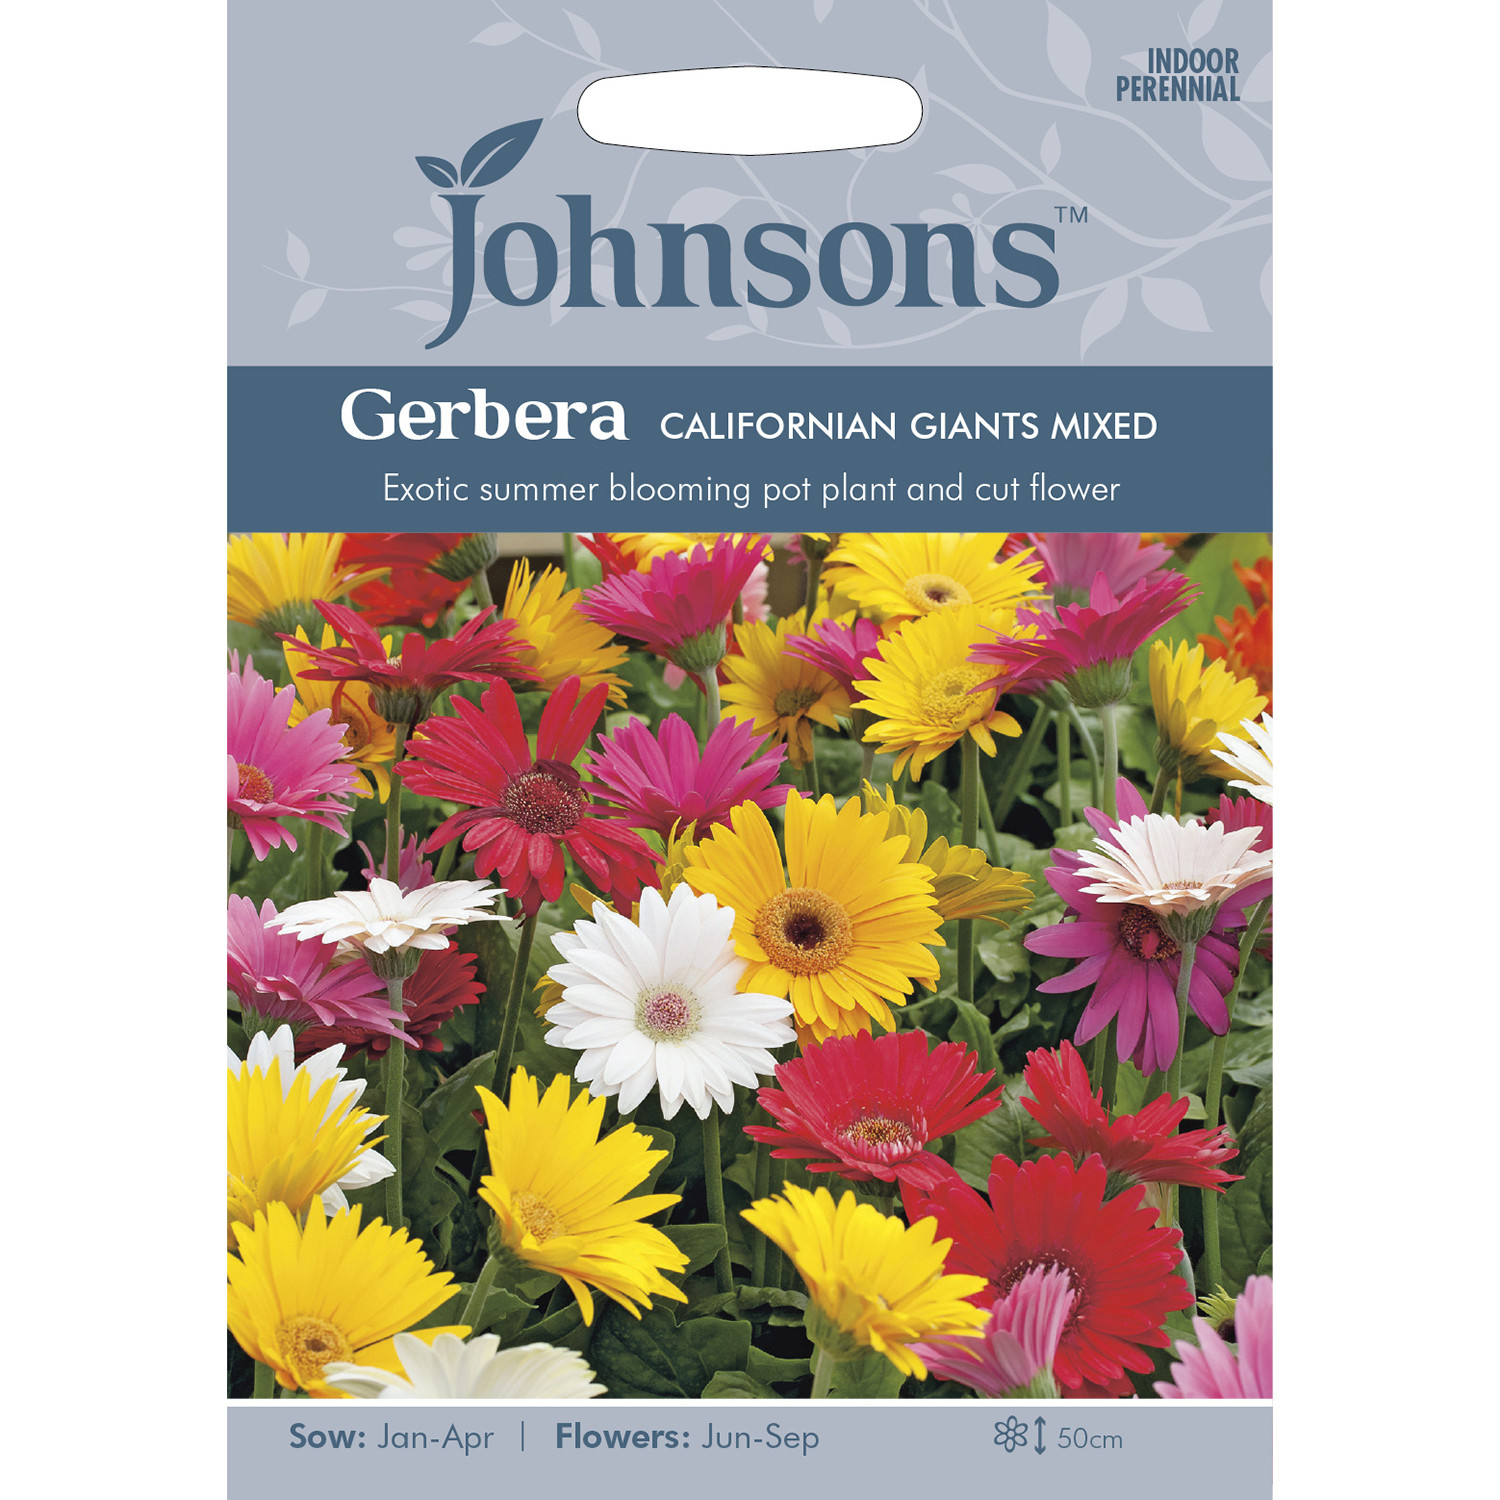 Johnsons Gerbera Californian Giants Mixed Flower Seeds Image 2